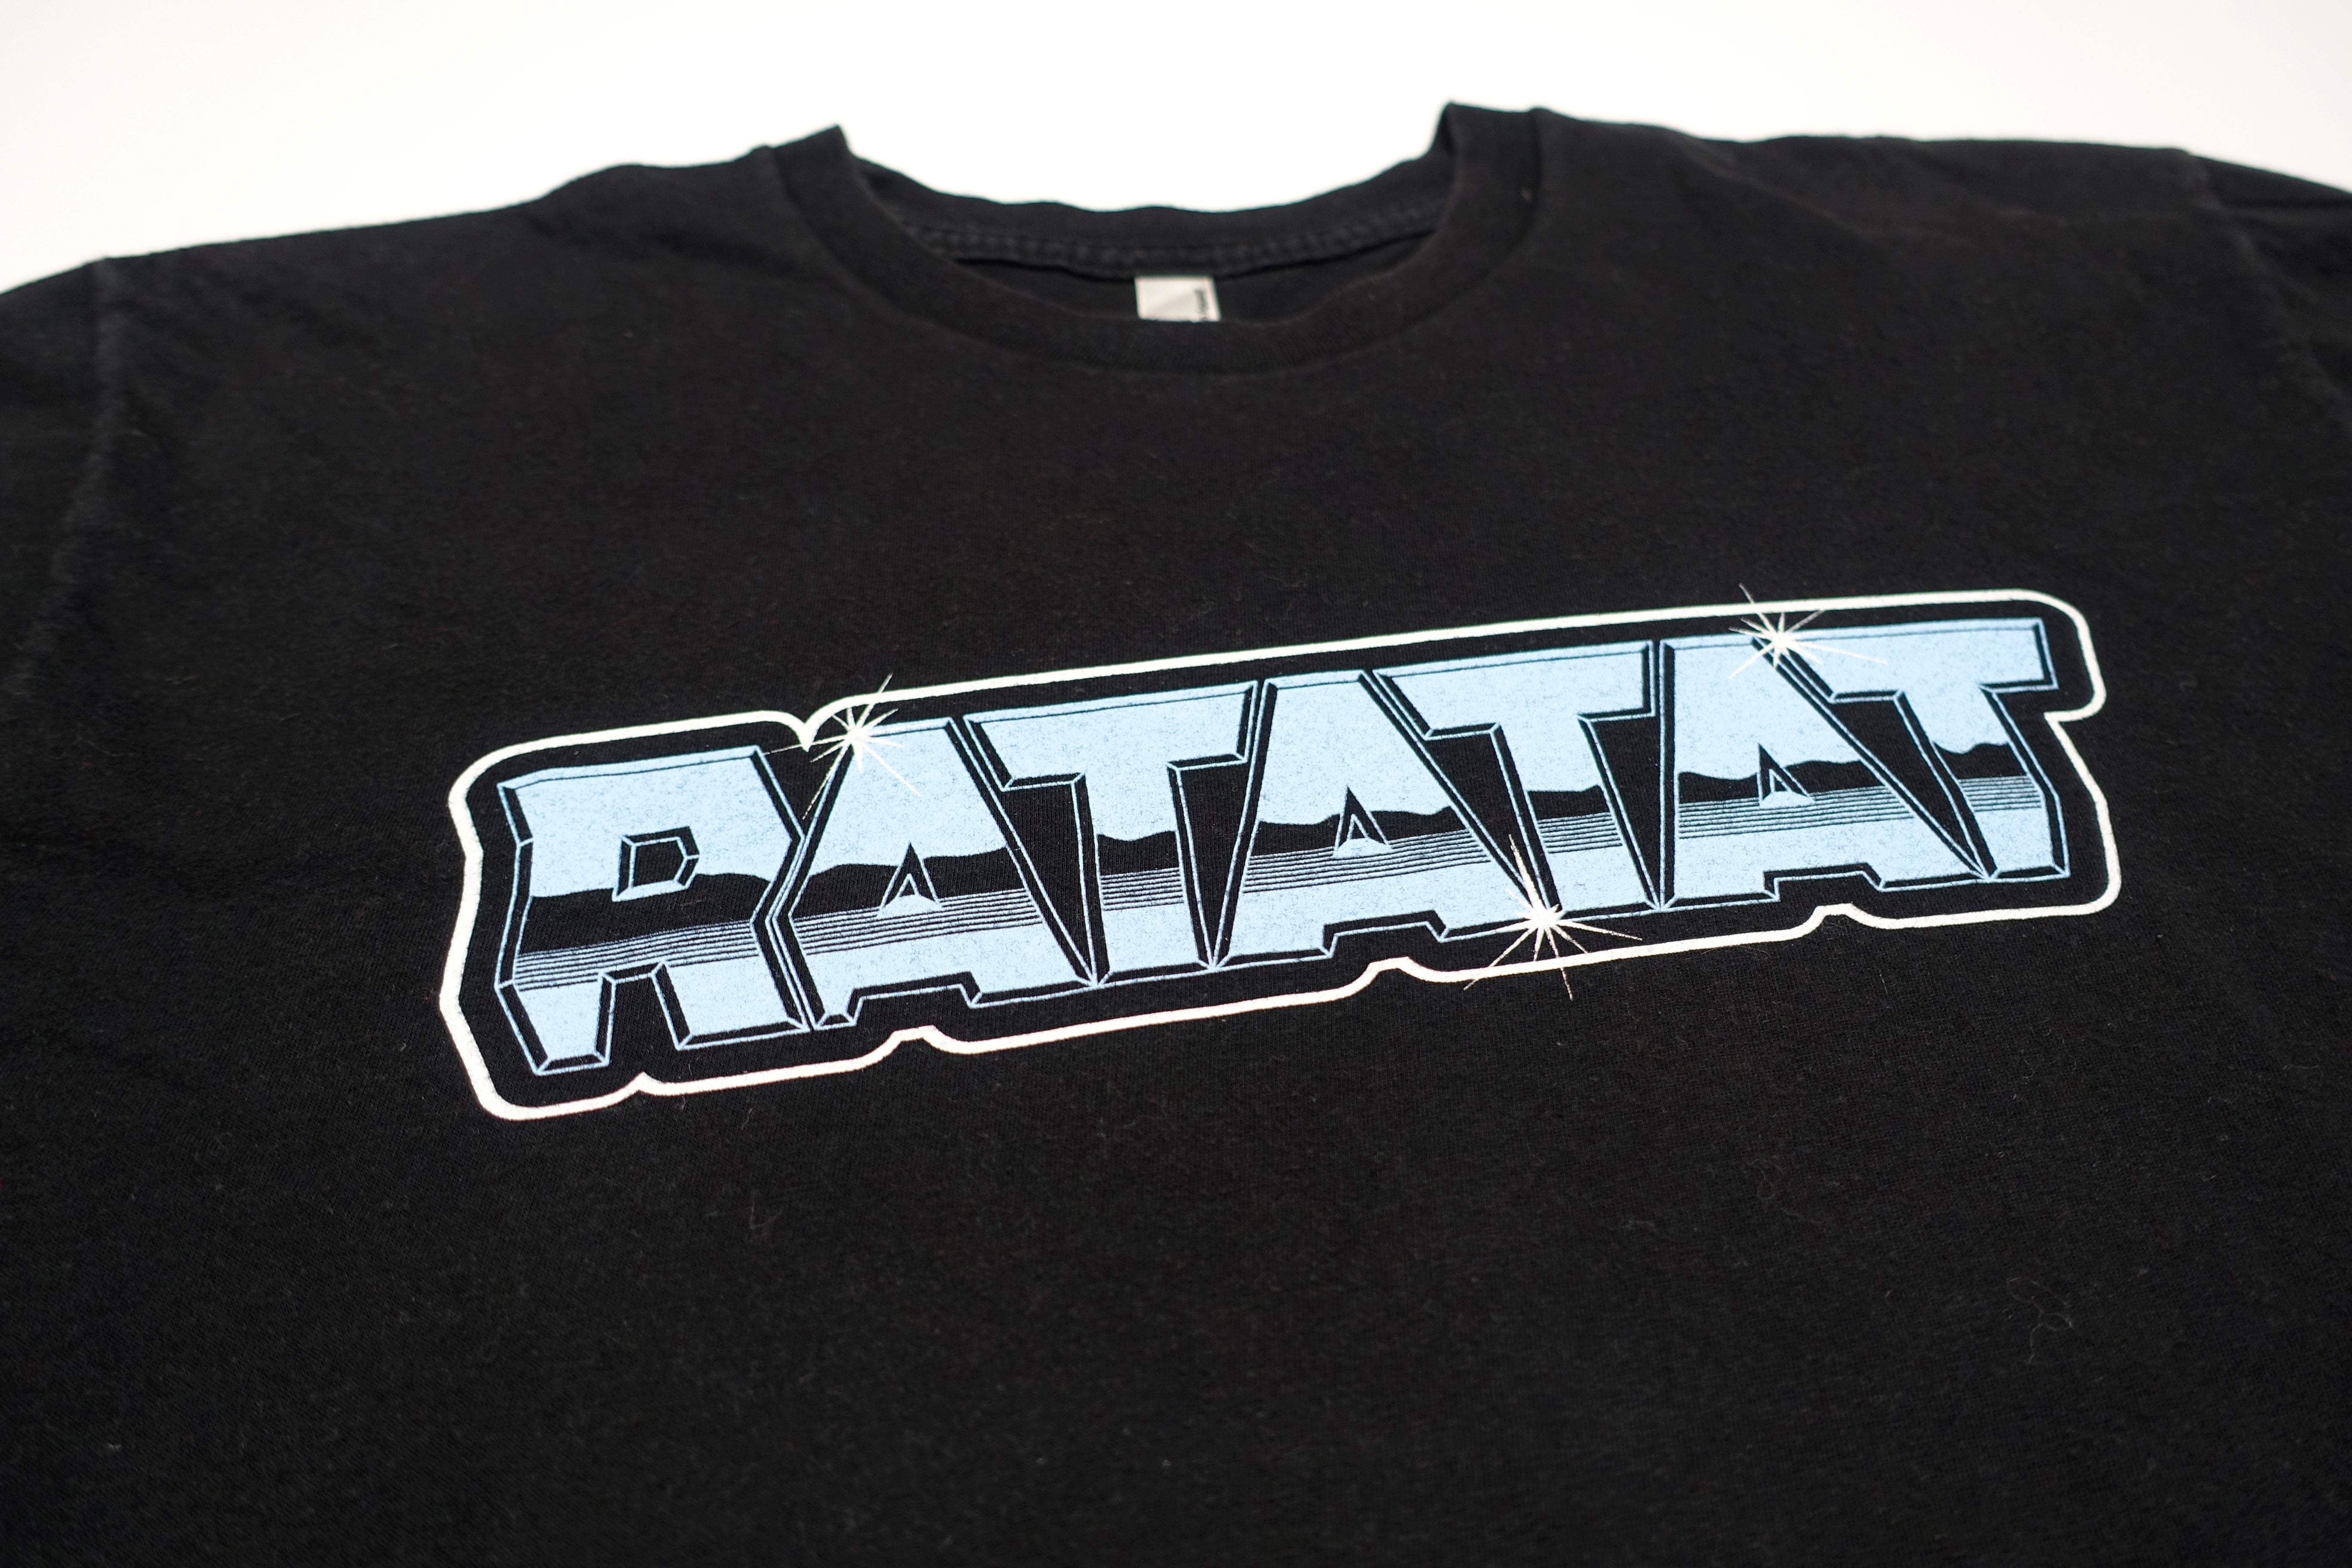 Ratatat ‎– LP3 Chrome Logo 2009 US Tour Shirt Size Large (Black)